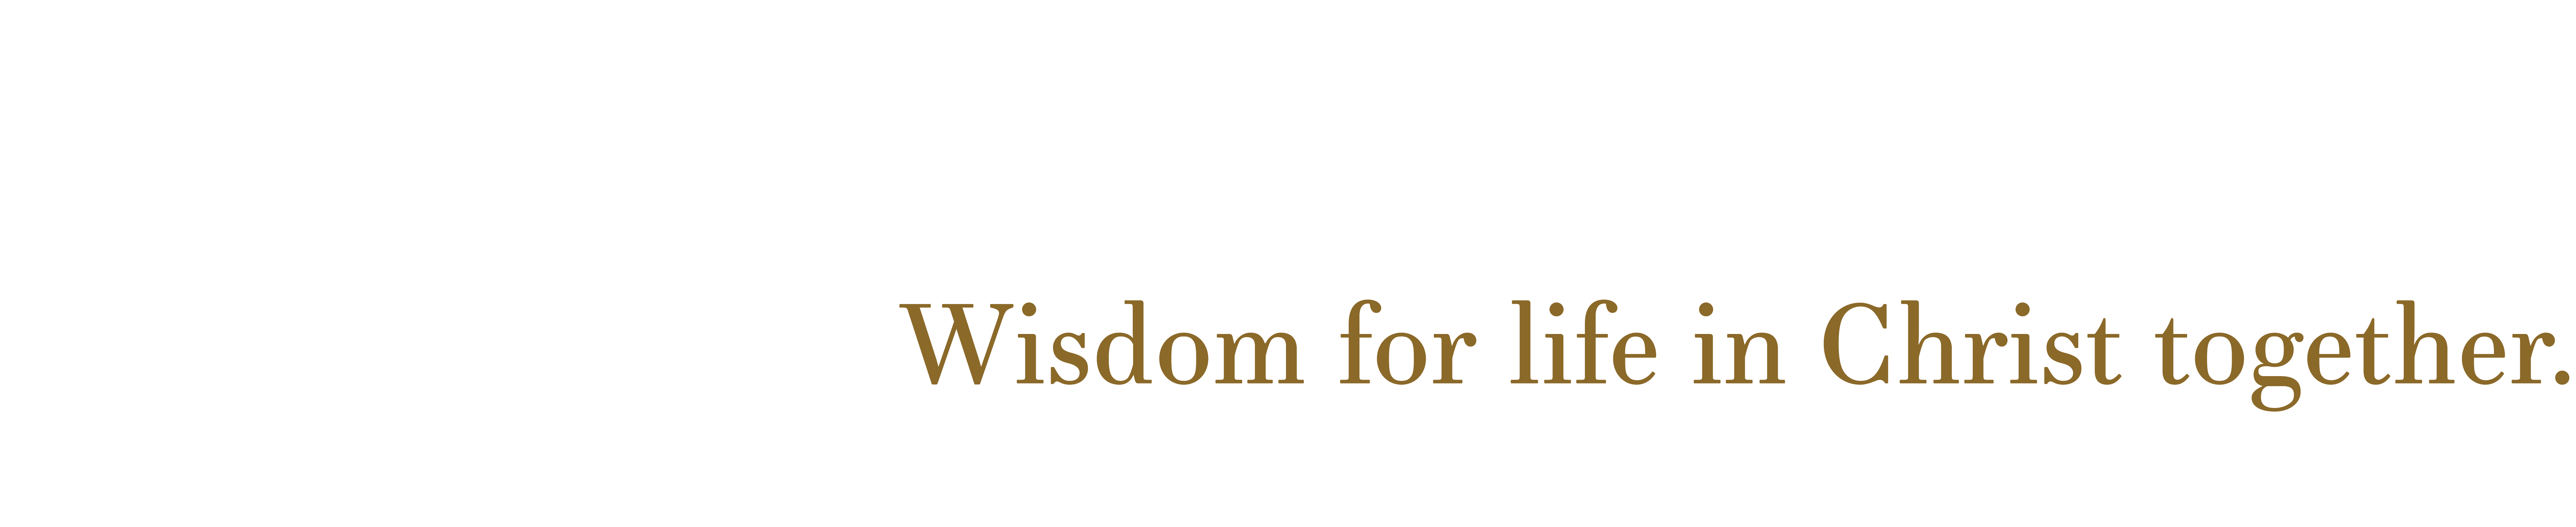 KevinCarson.com